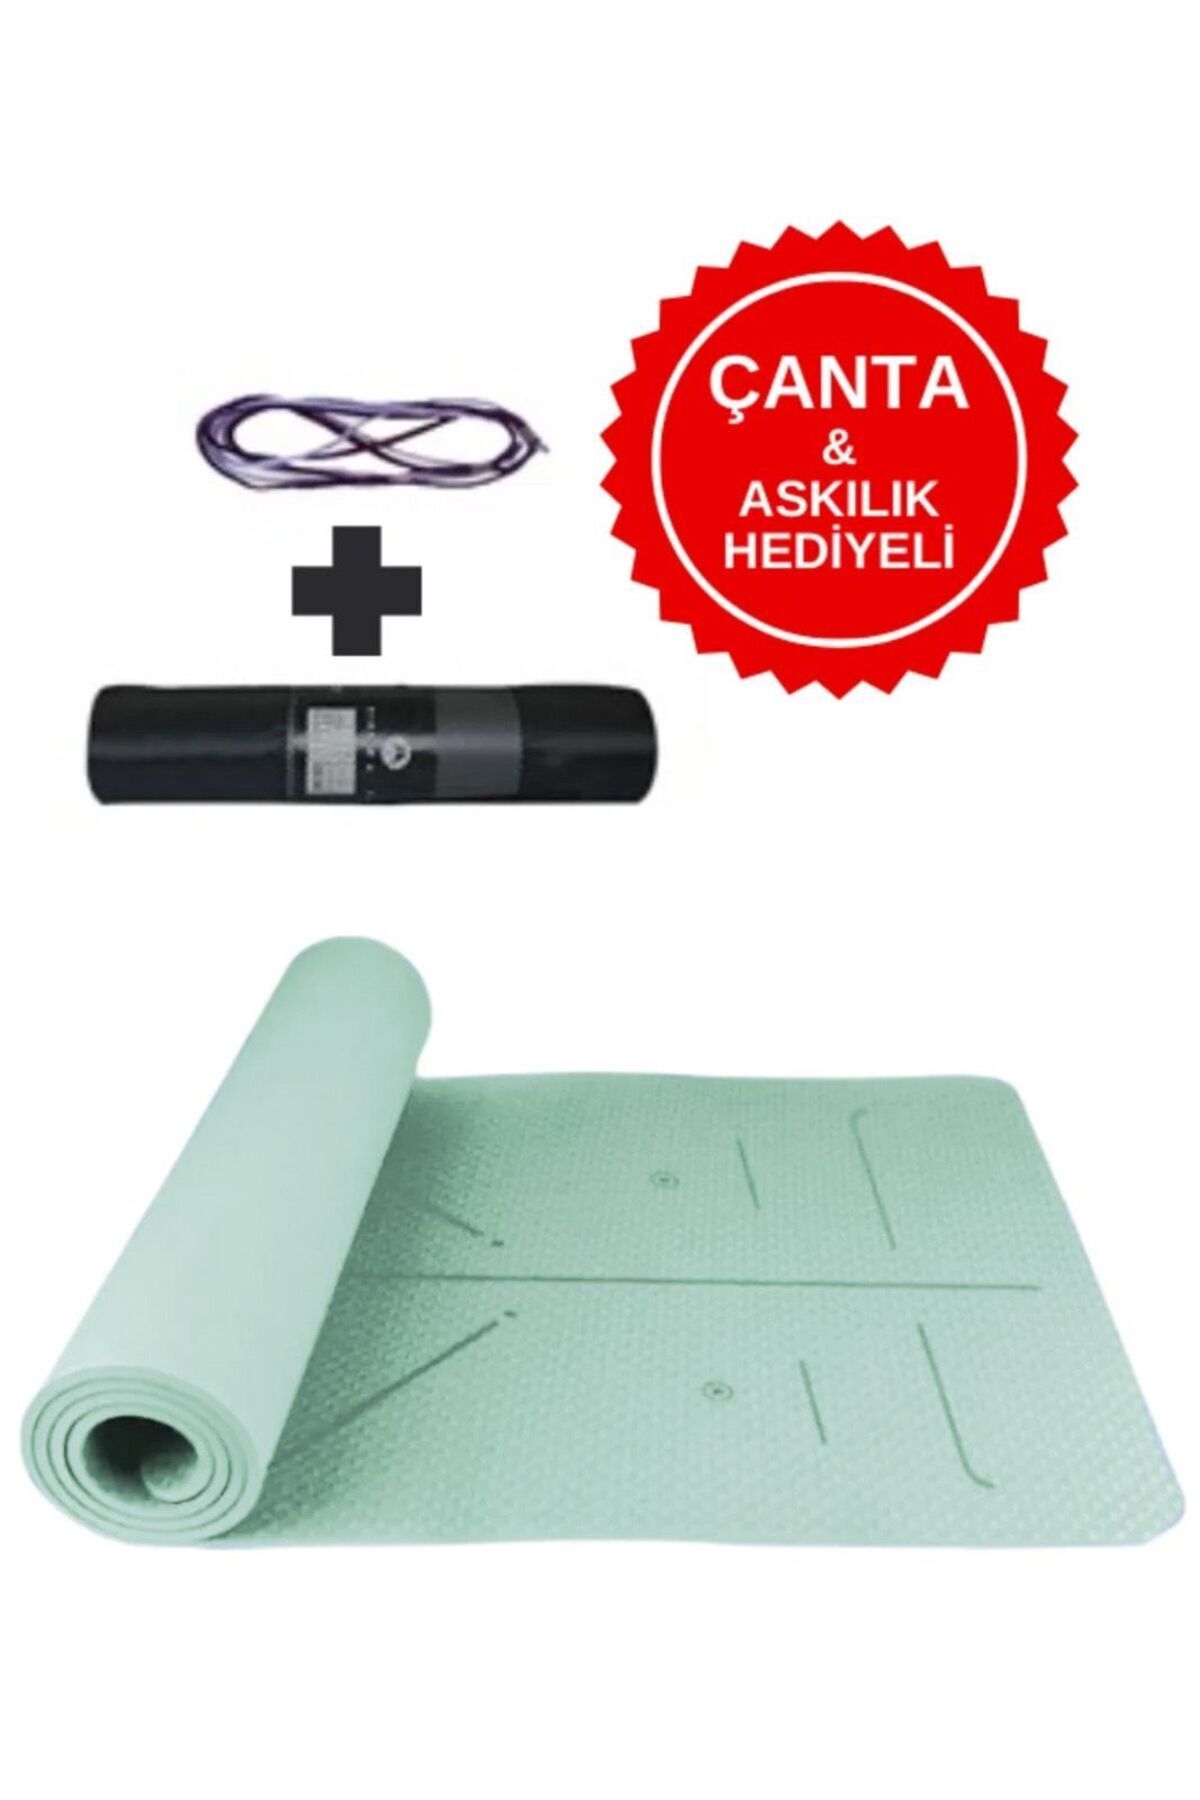 XTR Fitness Ekstra Konforlu Yoga Matı - 8mm Kalınlık, Ekolojik Tpe Pilates Egzersiz Minderi Su Yeşili